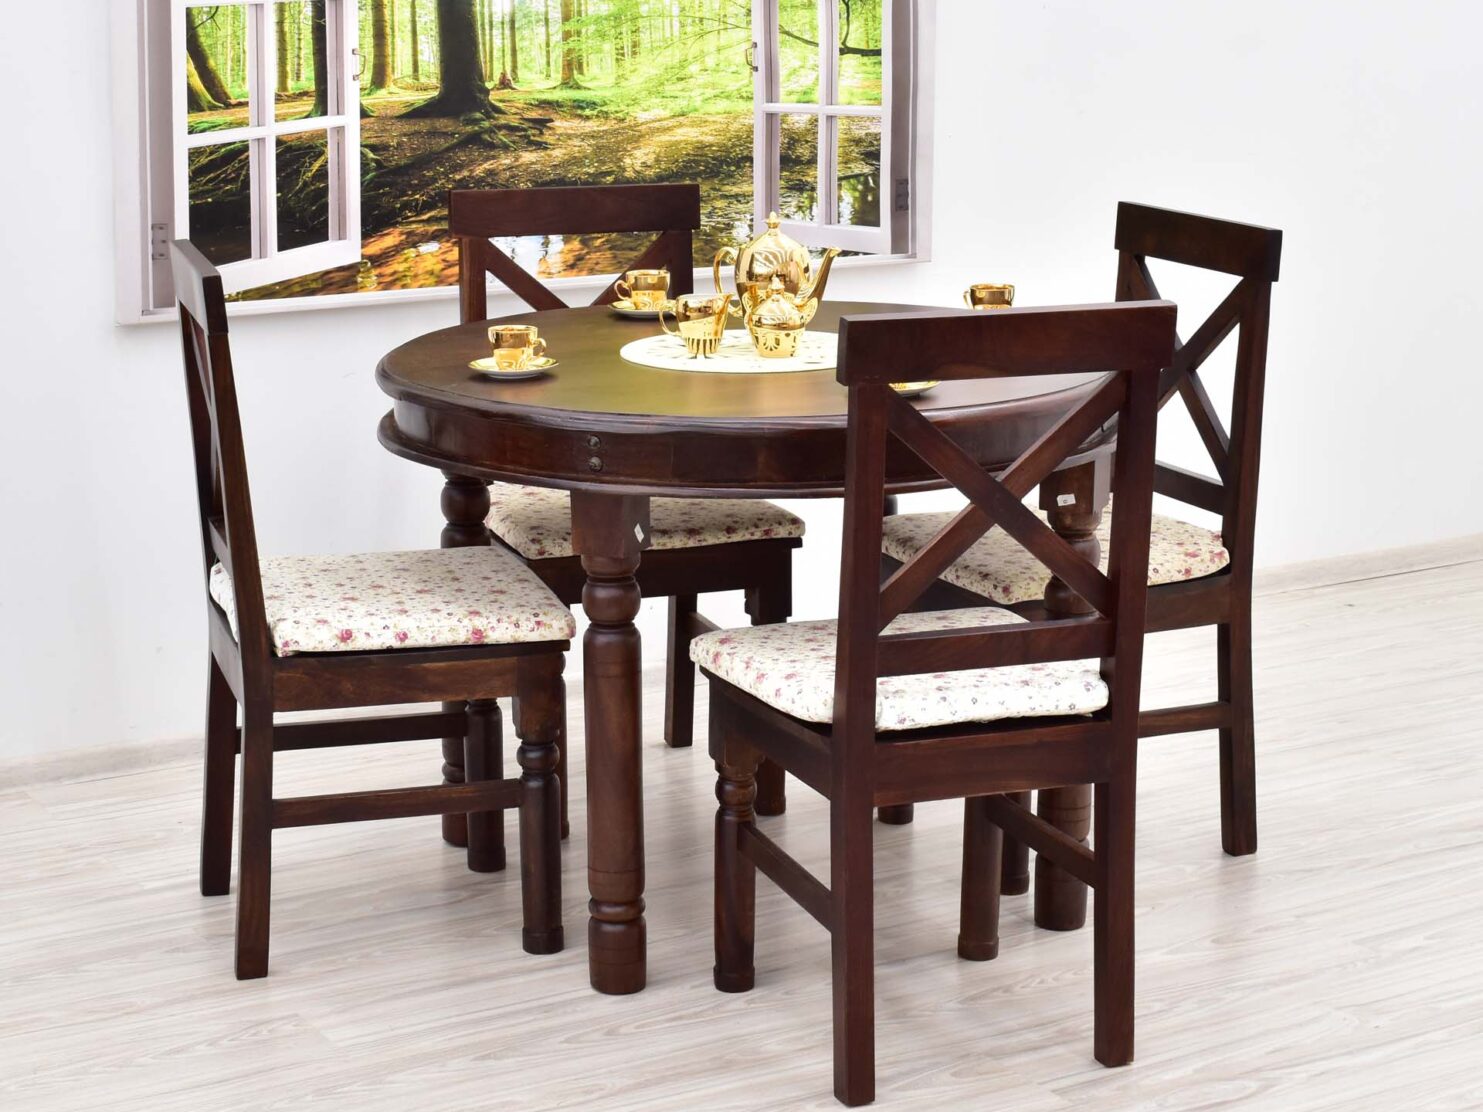 komplet-obiadowy-kolonialny-okragly-stol-4-krzesla-lite-drewno-palisander-indyjski-styl-klasyczny